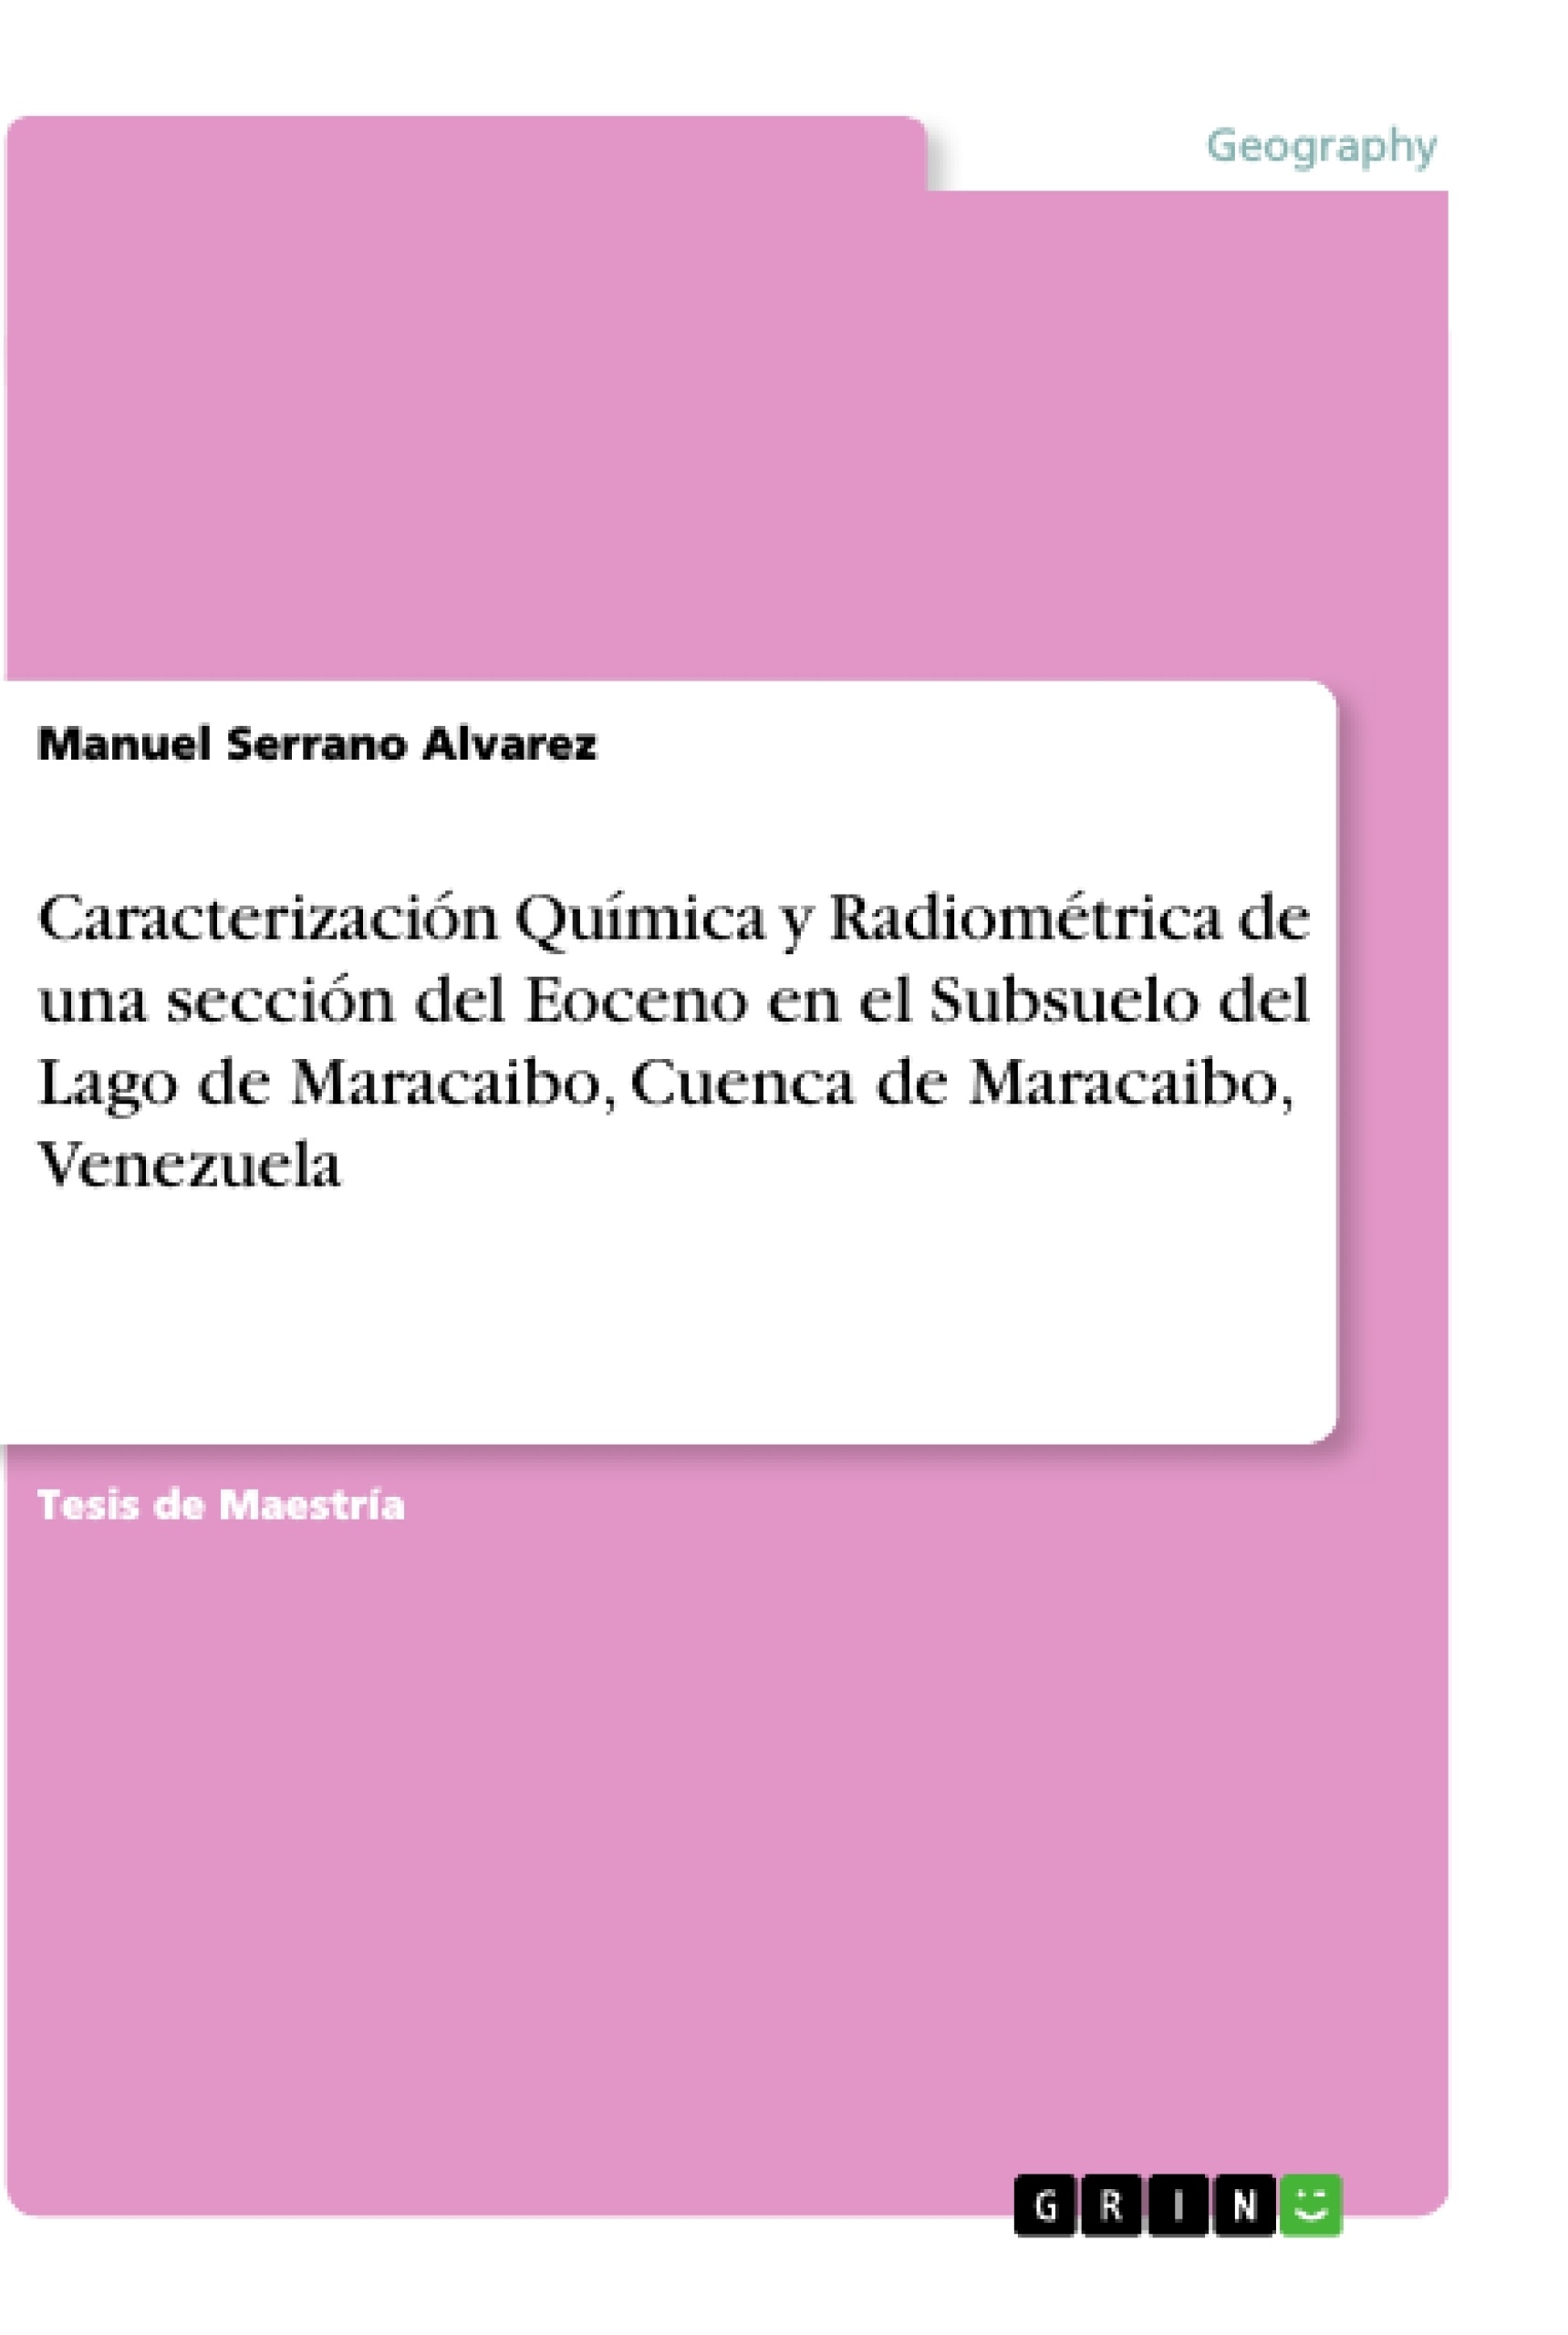 Título: Caracterización Química y Radiométrica de una sección del Eoceno en el Subsuelo del Lago de Maracaibo, Cuenca de Maracaibo, Venezuela